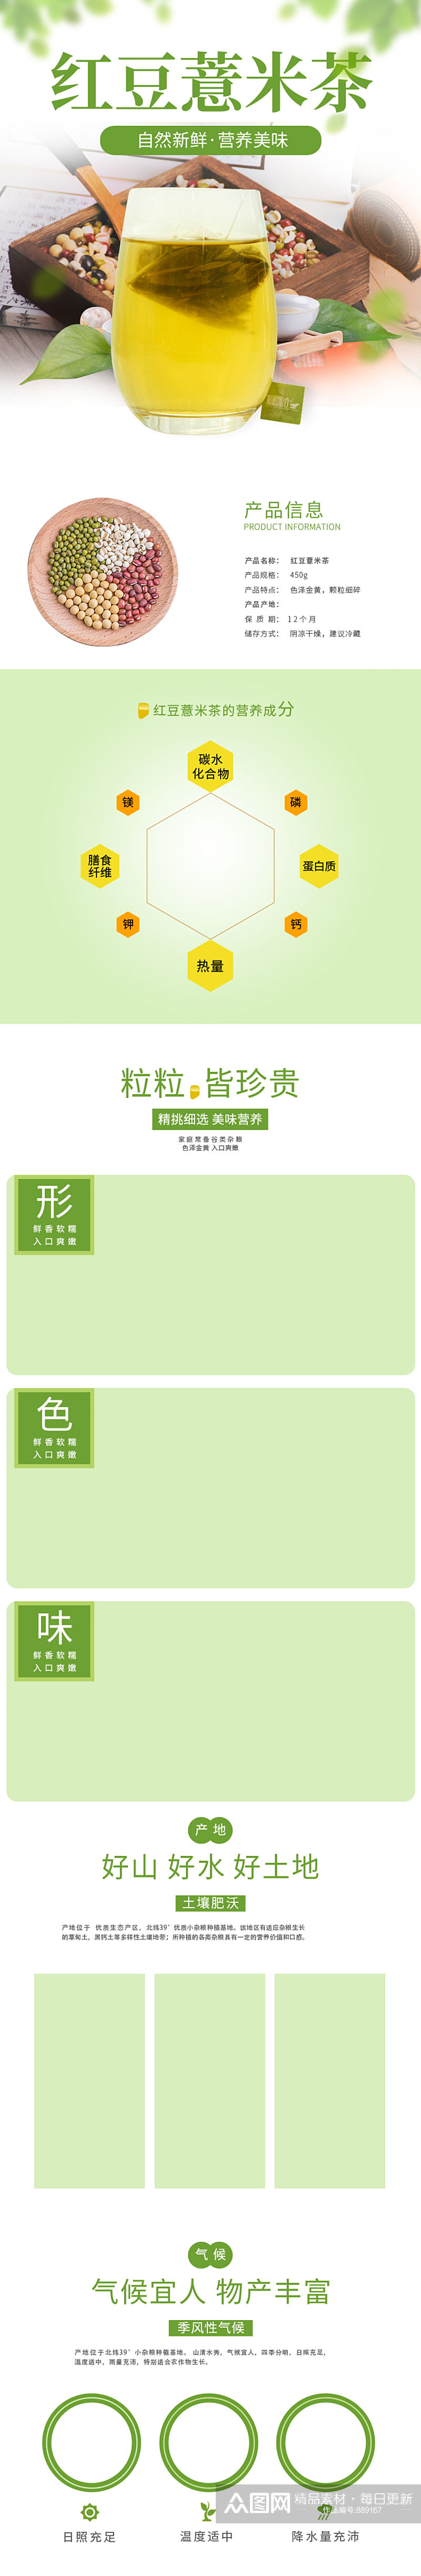 红豆薏米茶详情页淘宝天猫设计模板素材